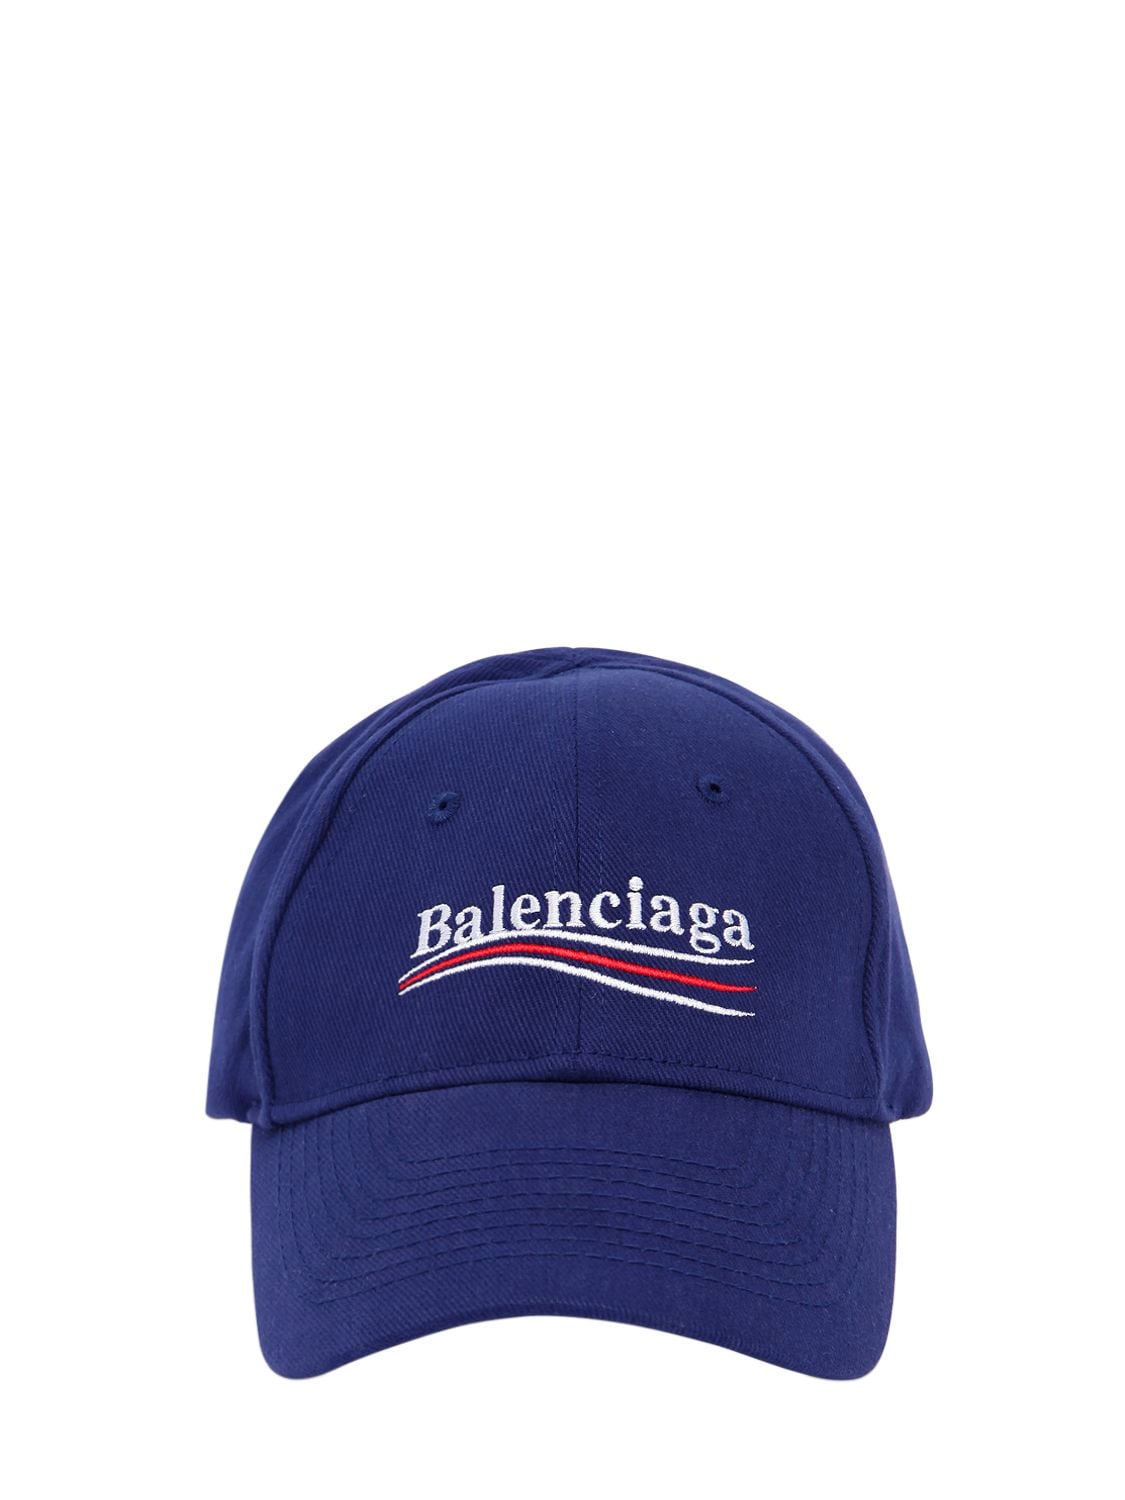 BALENCIAGA "NEW POLITICAL"LOGO纯棉帽子,67IIUU085-NDI3Nw2